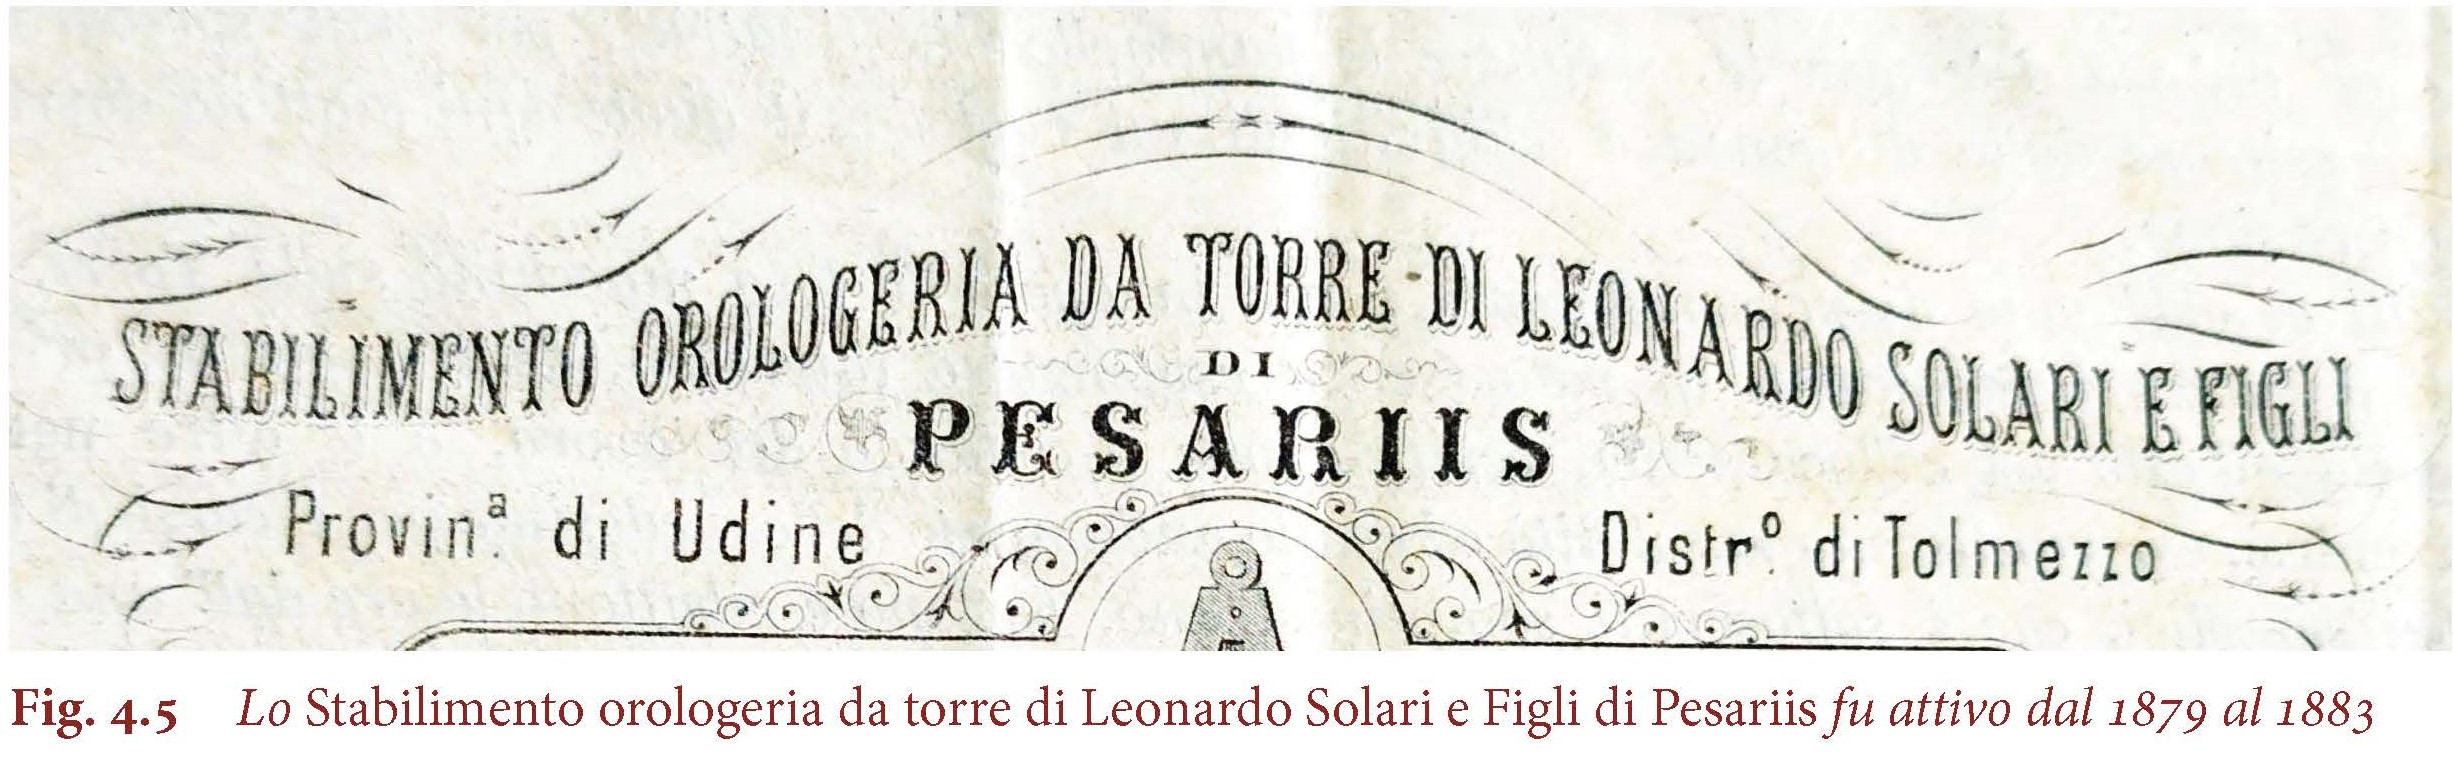 Lo Stabilimento orologeria da torre di Leonardo Solari e Figli di Pesariis fu attivo dal 1879 al 1883